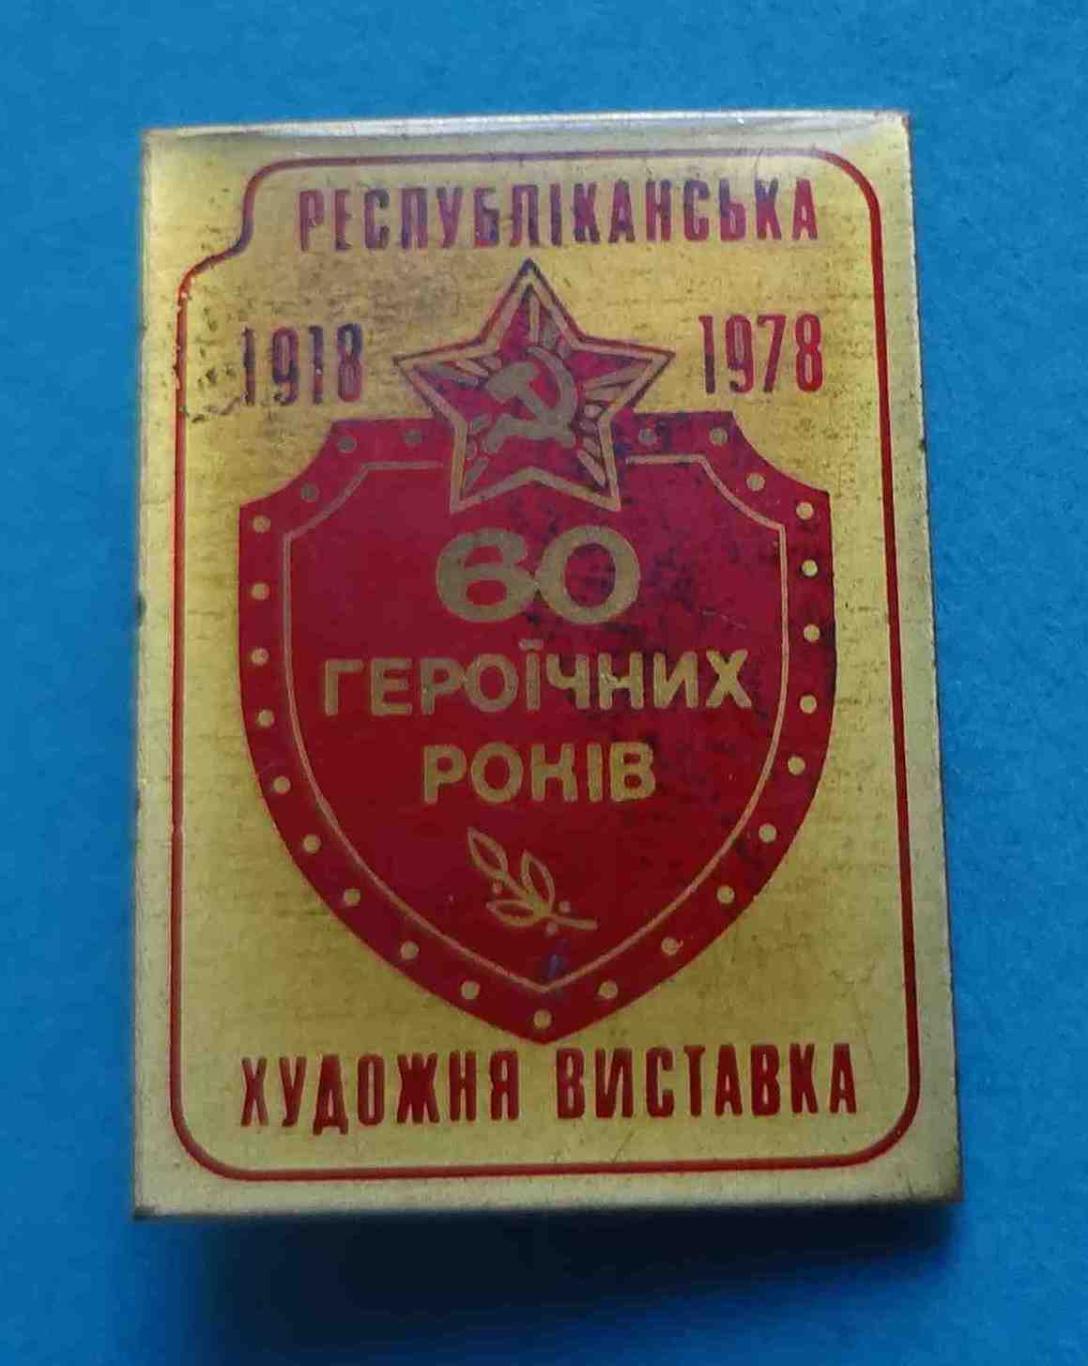 60 героических лет Республиканская художественная выставка УССР 1918-1978 2 (13)